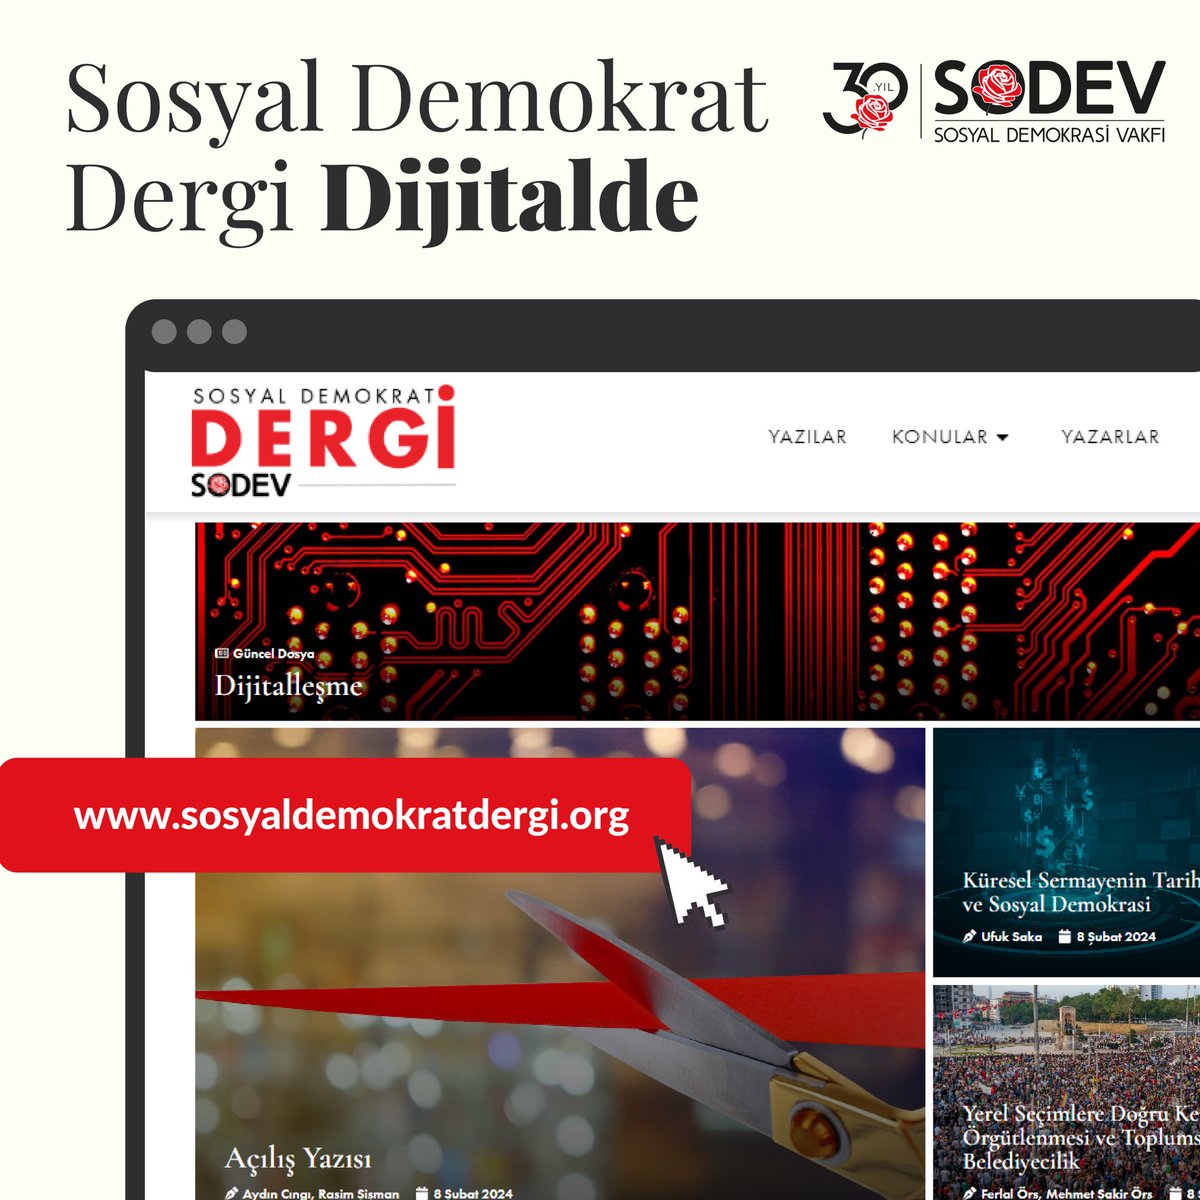 SOSYAL DEMOKRAT DERGİ DİJİTAL PLATFORMDA YAYINDA! “Sosyal demokrasi” alanında ülkemizdeki tek süreli yayın olan SOSYAL DEMOKRAT DERGİ, yenilenen içeriği ve tasarımı ile dijital platformda yayında. Açılış yazısı için: sosyaldemokratdergi.org/acilis-yazisi/